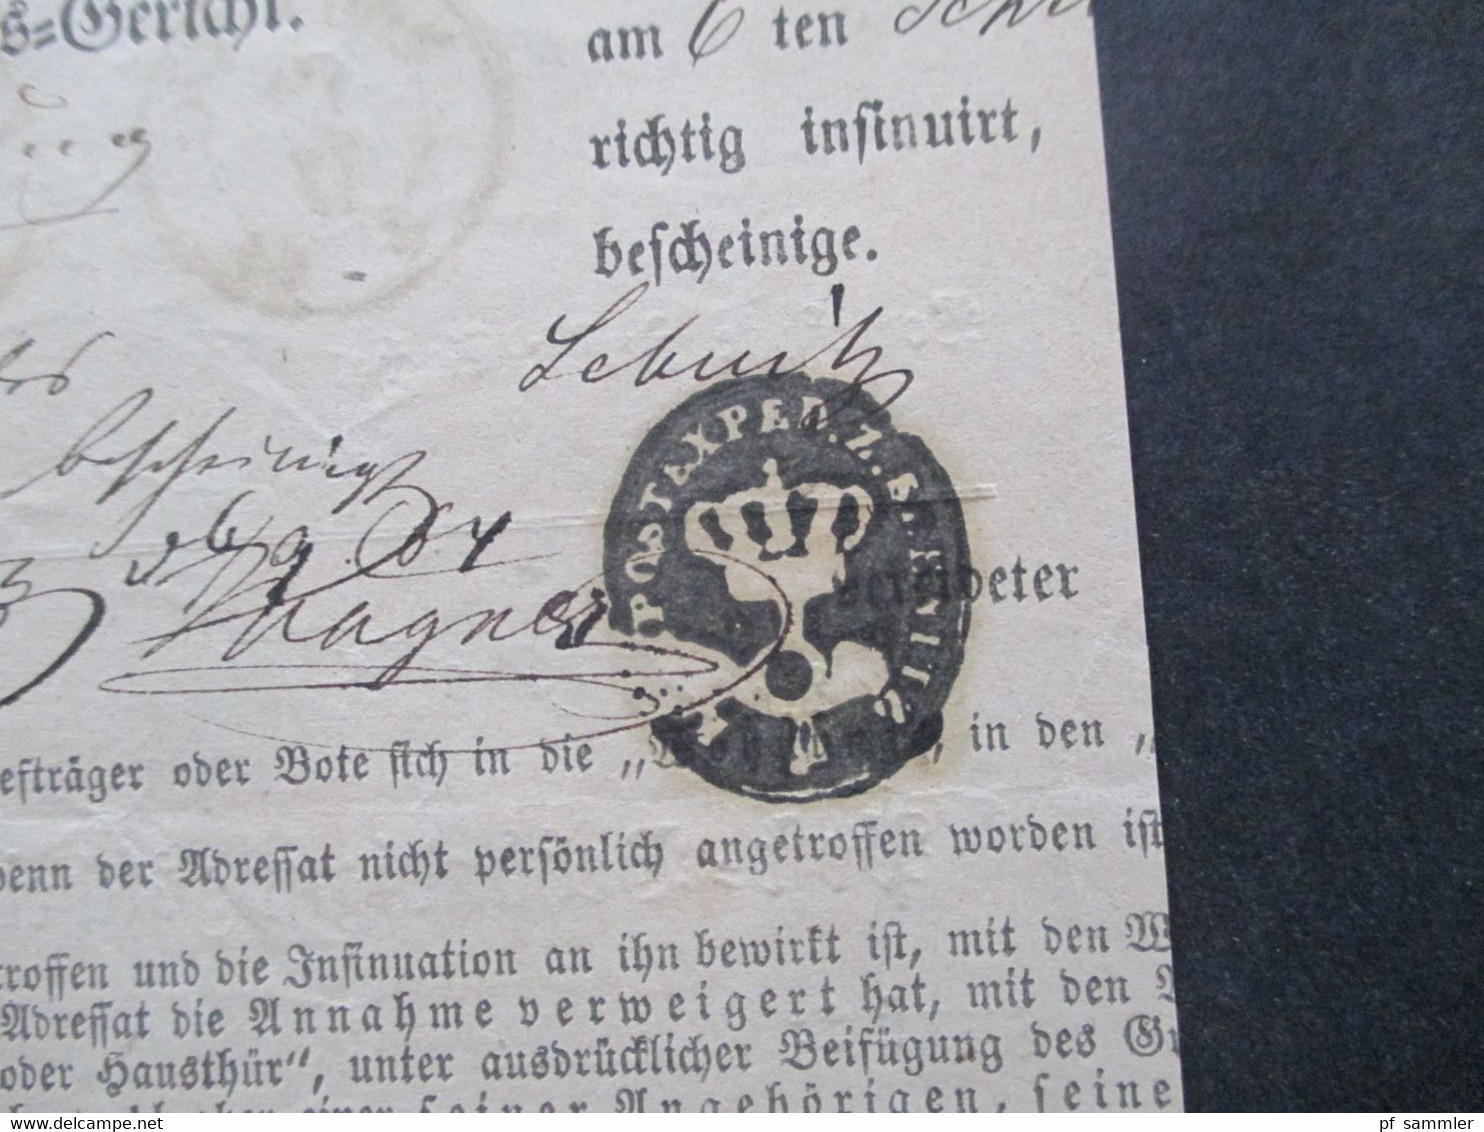 Altdeutschland Sachsen 1.9.1864 Beleg / Post Behändigungsschein Portofreie Justizsache Stempel K2 Sebnitz / Recomandirt - Sachsen